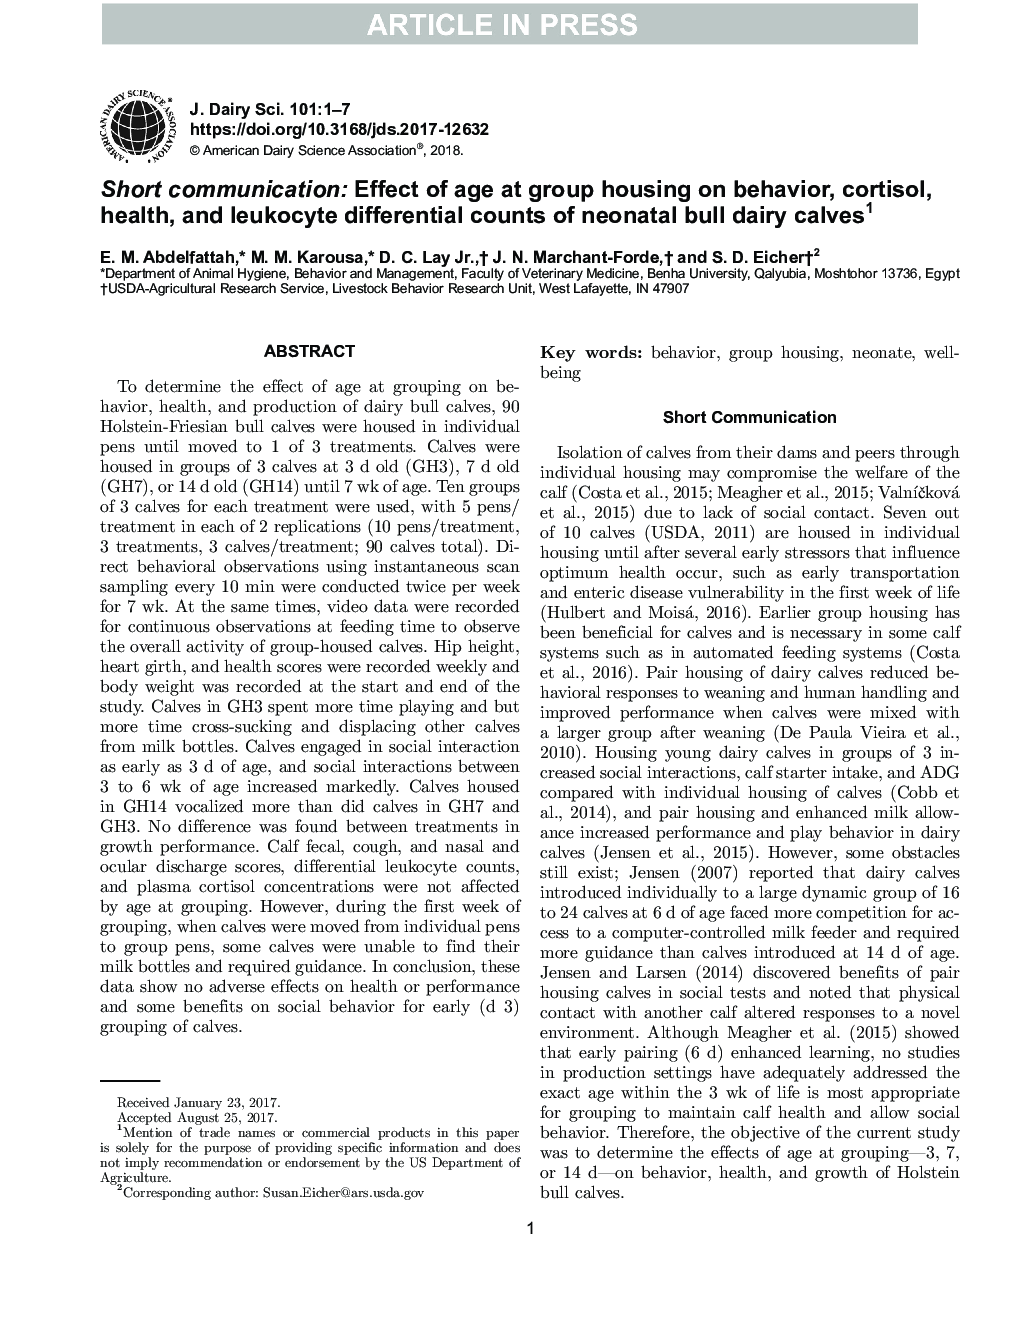 ارتباط کوتاه: اثر سن در گروه مسکن بر رفتار، کورتیزول، سلامتی و تعداد دیفرانسیل لکوسیتی گوساله های شیرخوار نوزاد 